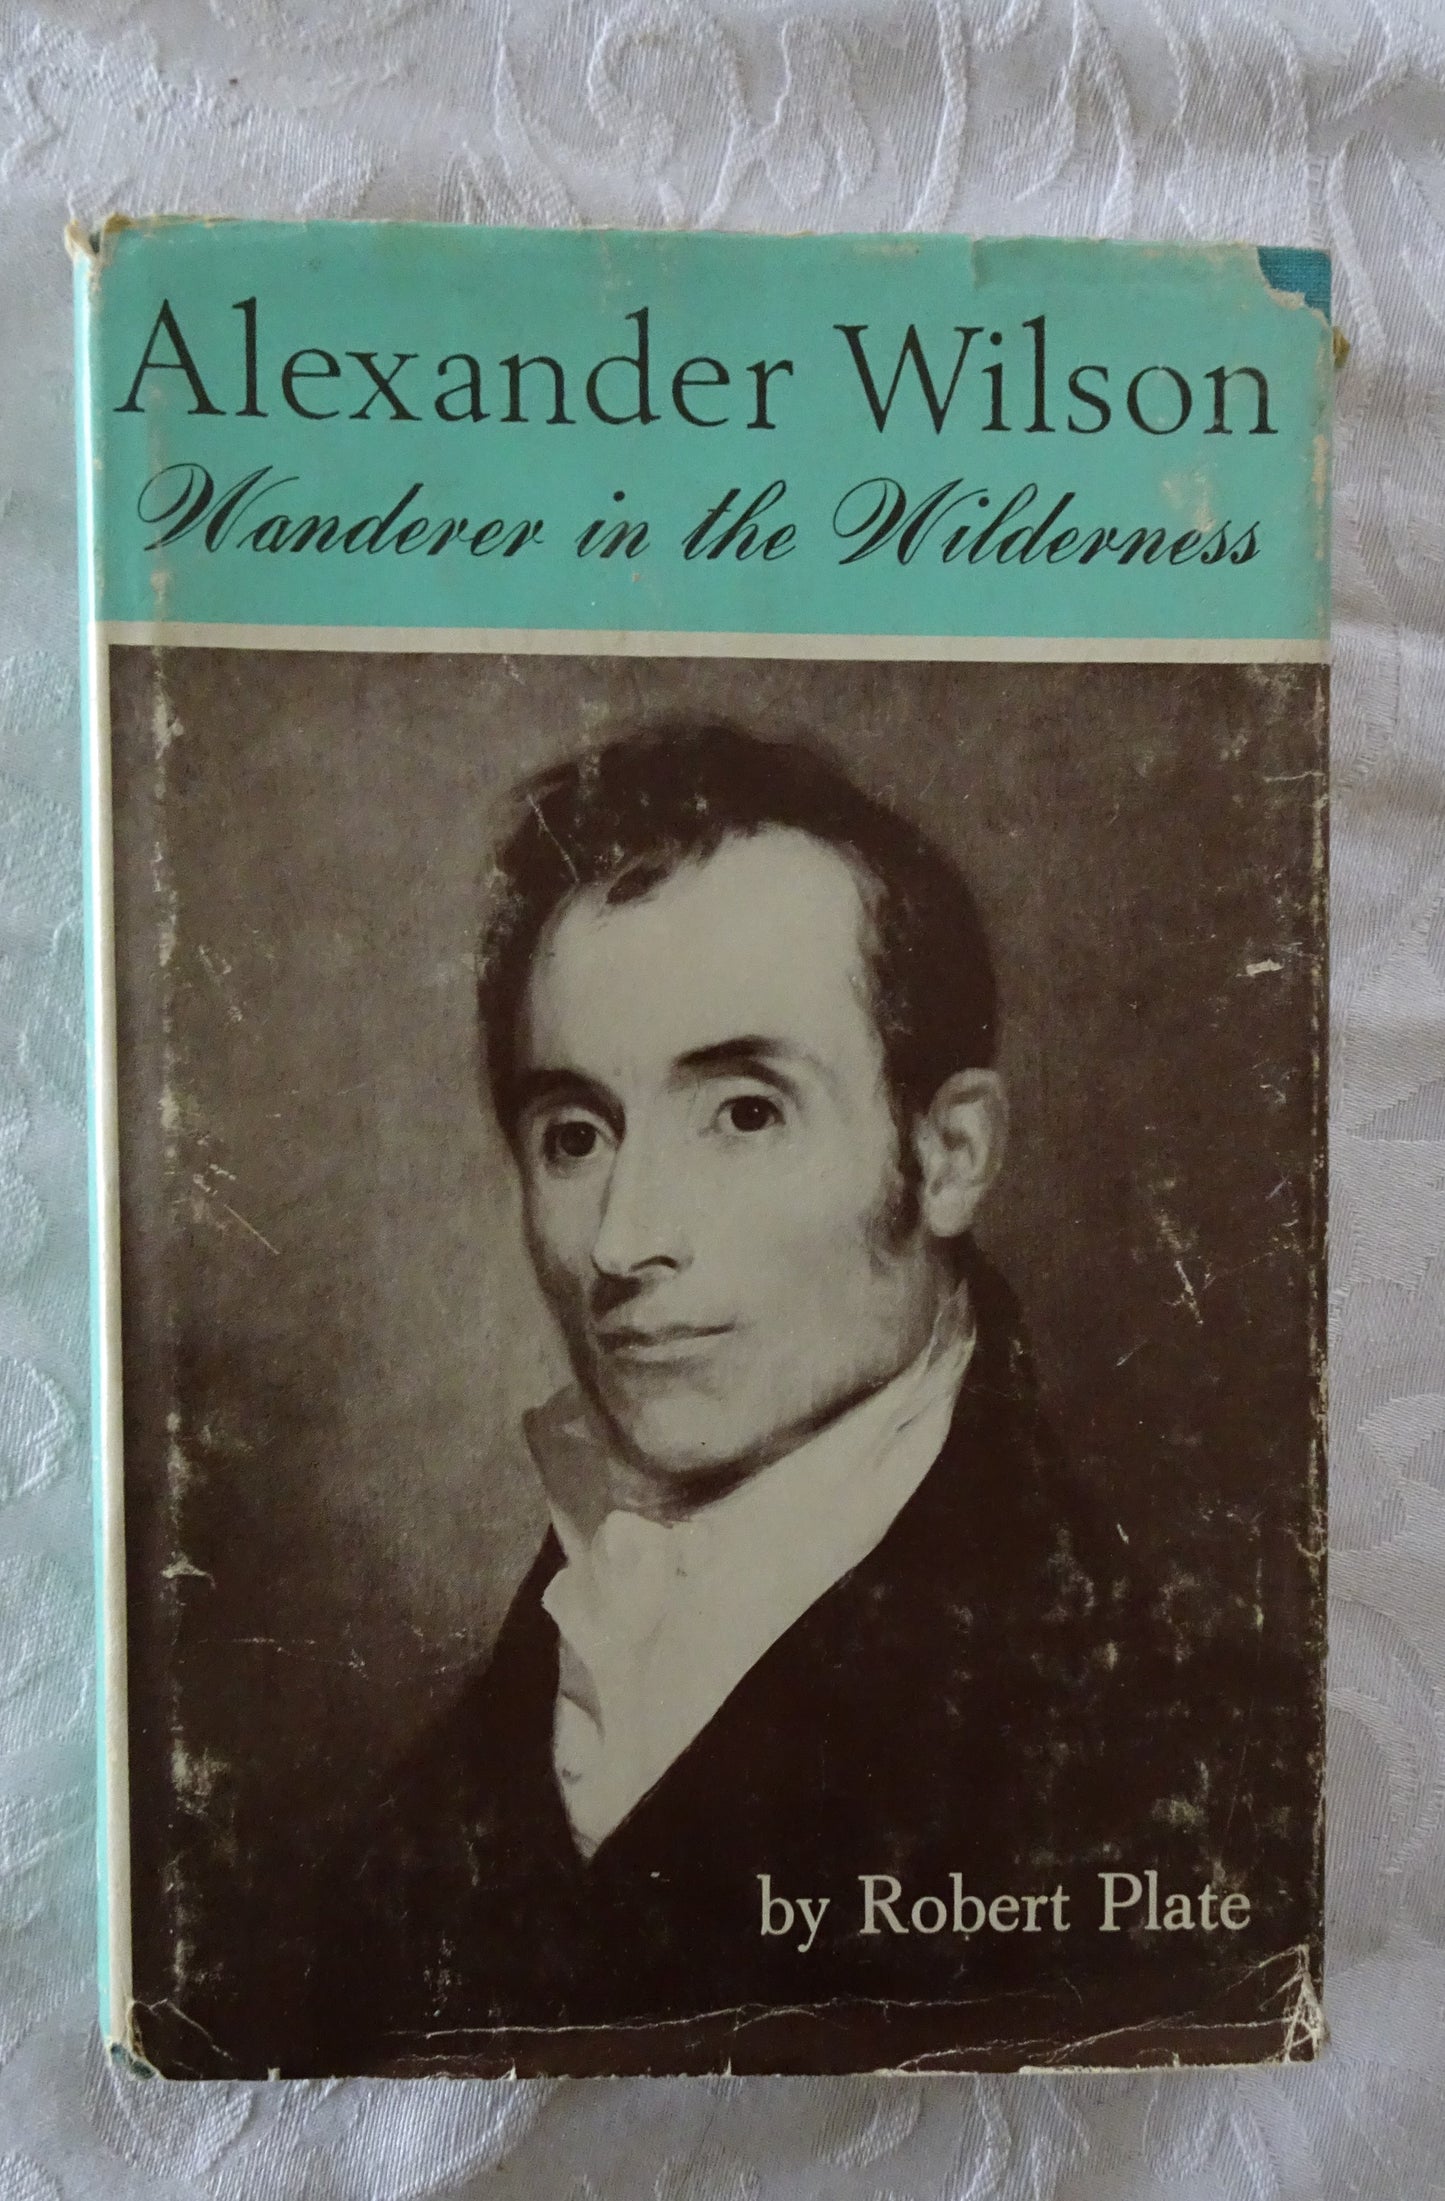 Alexander Wilson by Robert Plate